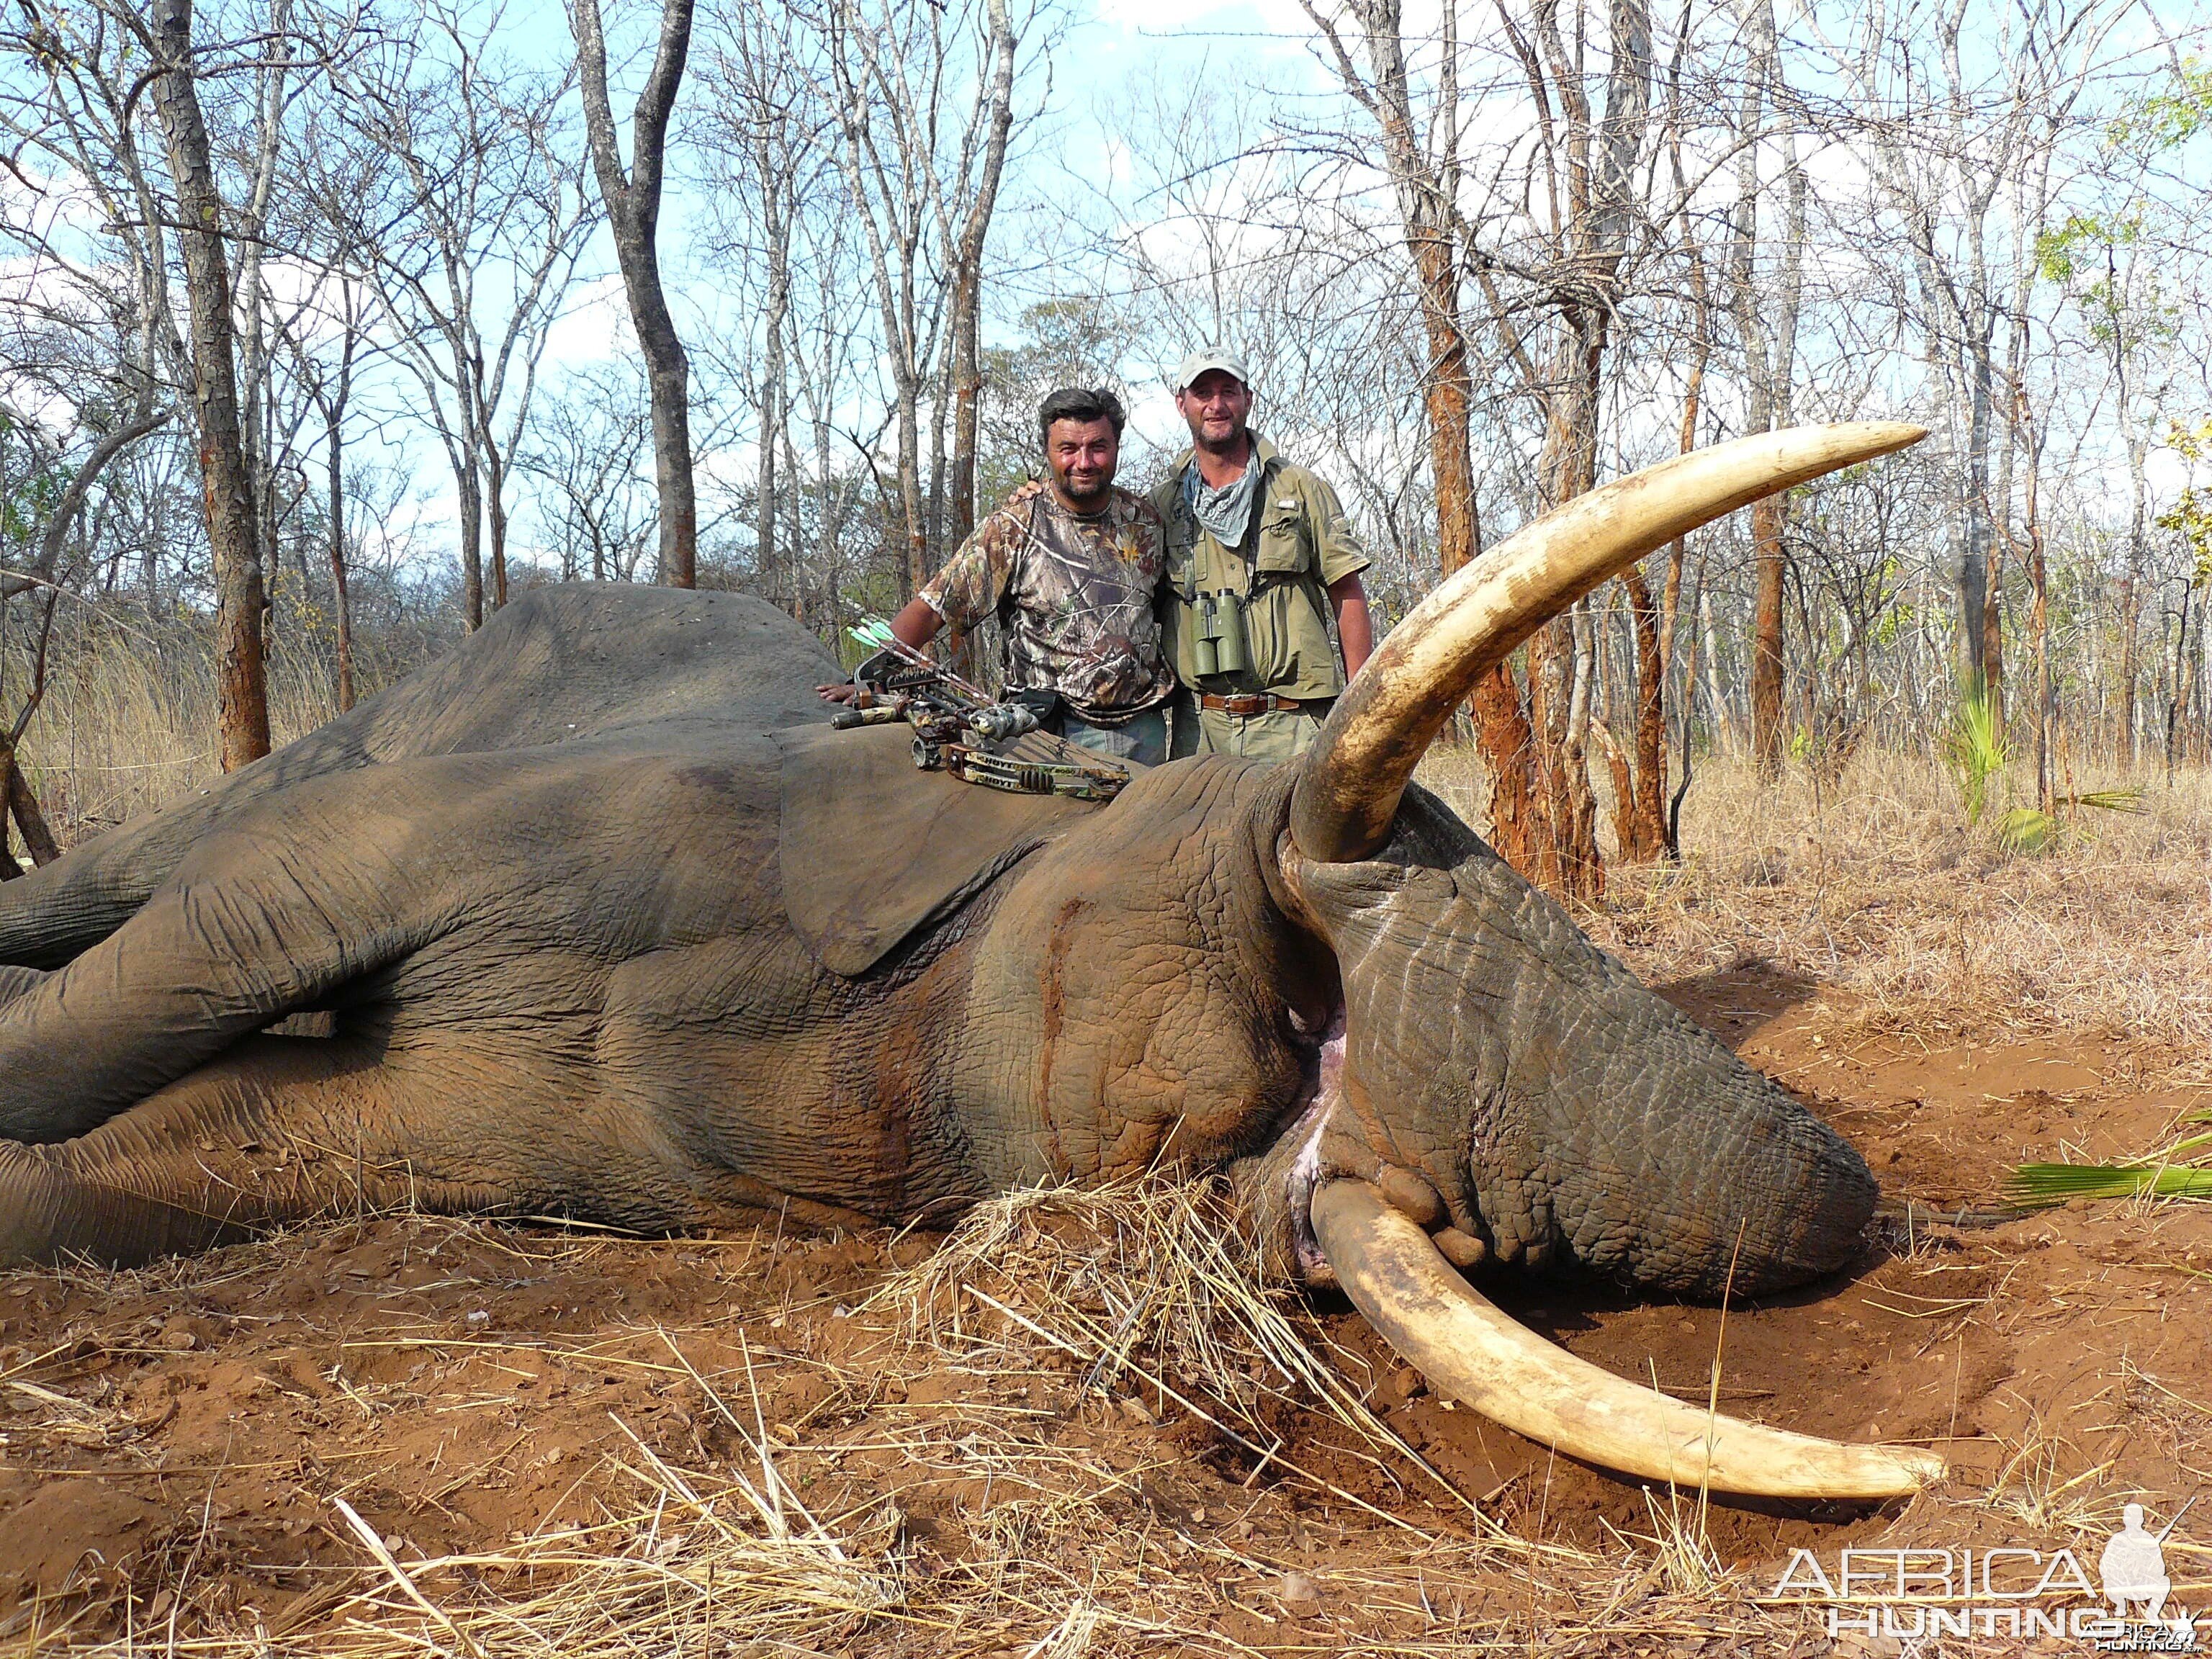 72 pound elephant bowhunt